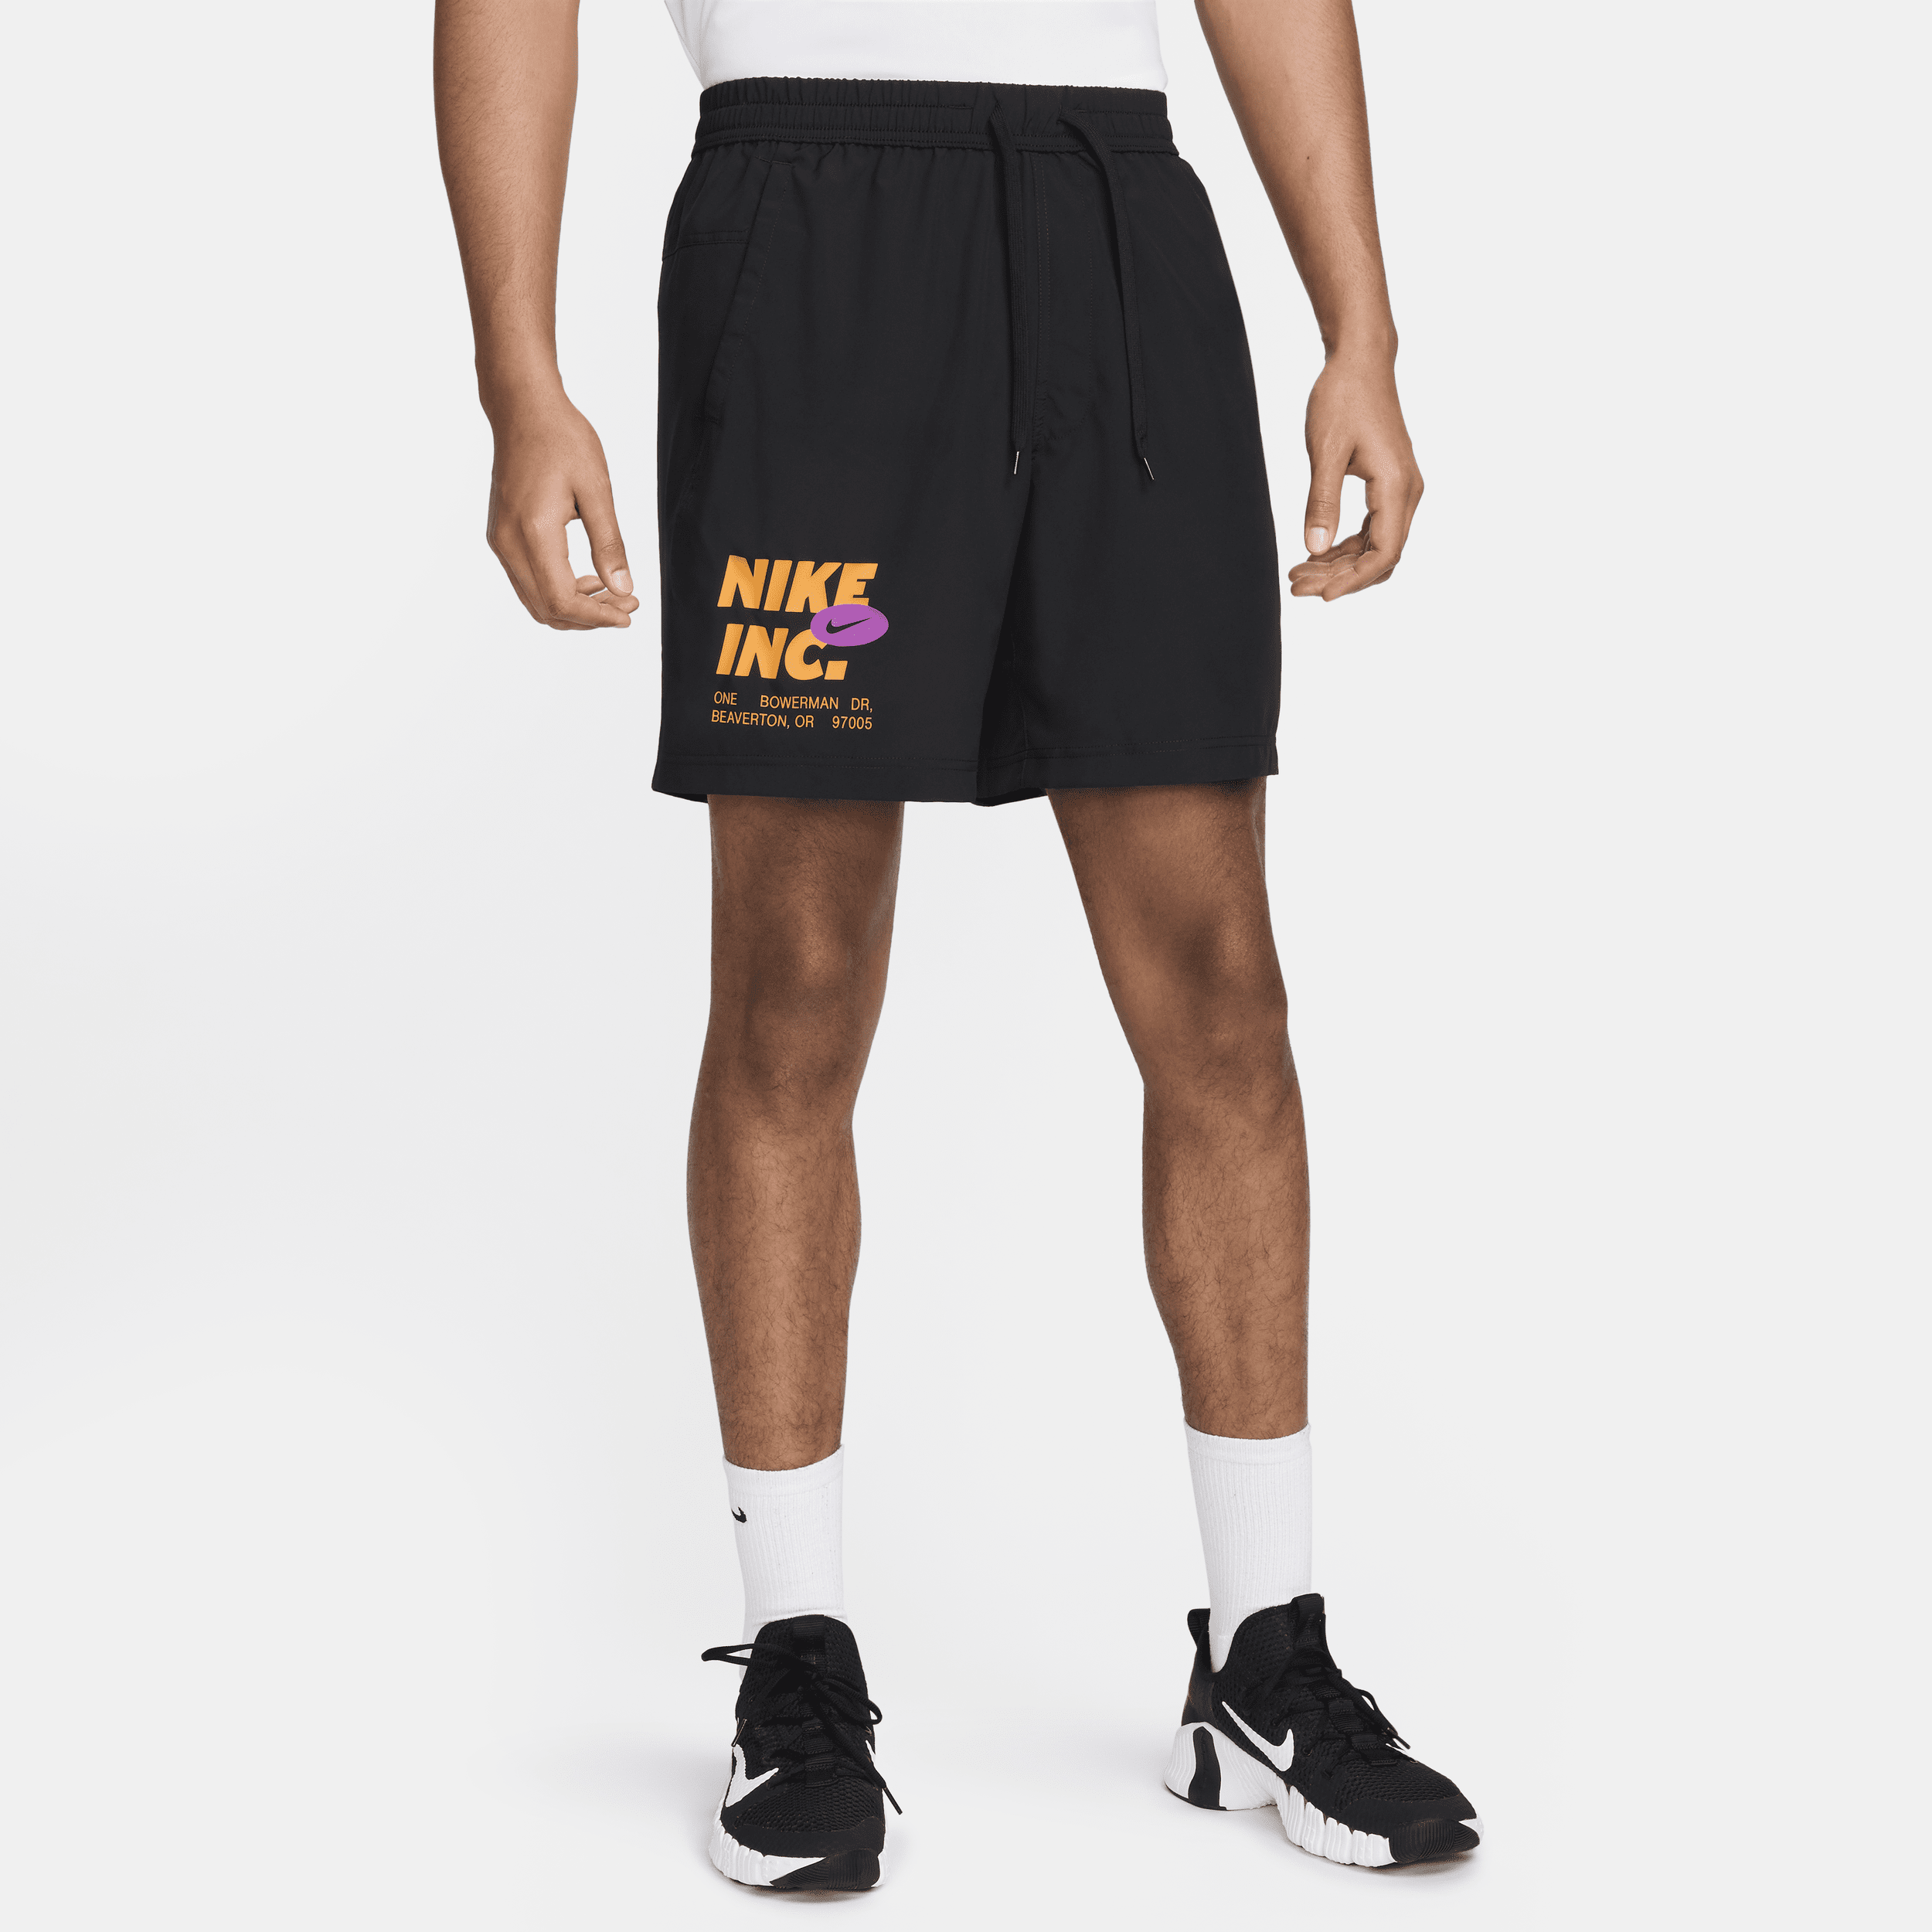 Shorts da fitness Dri-FIT non foderati 18 cm Nike Form – Uomo - Nero